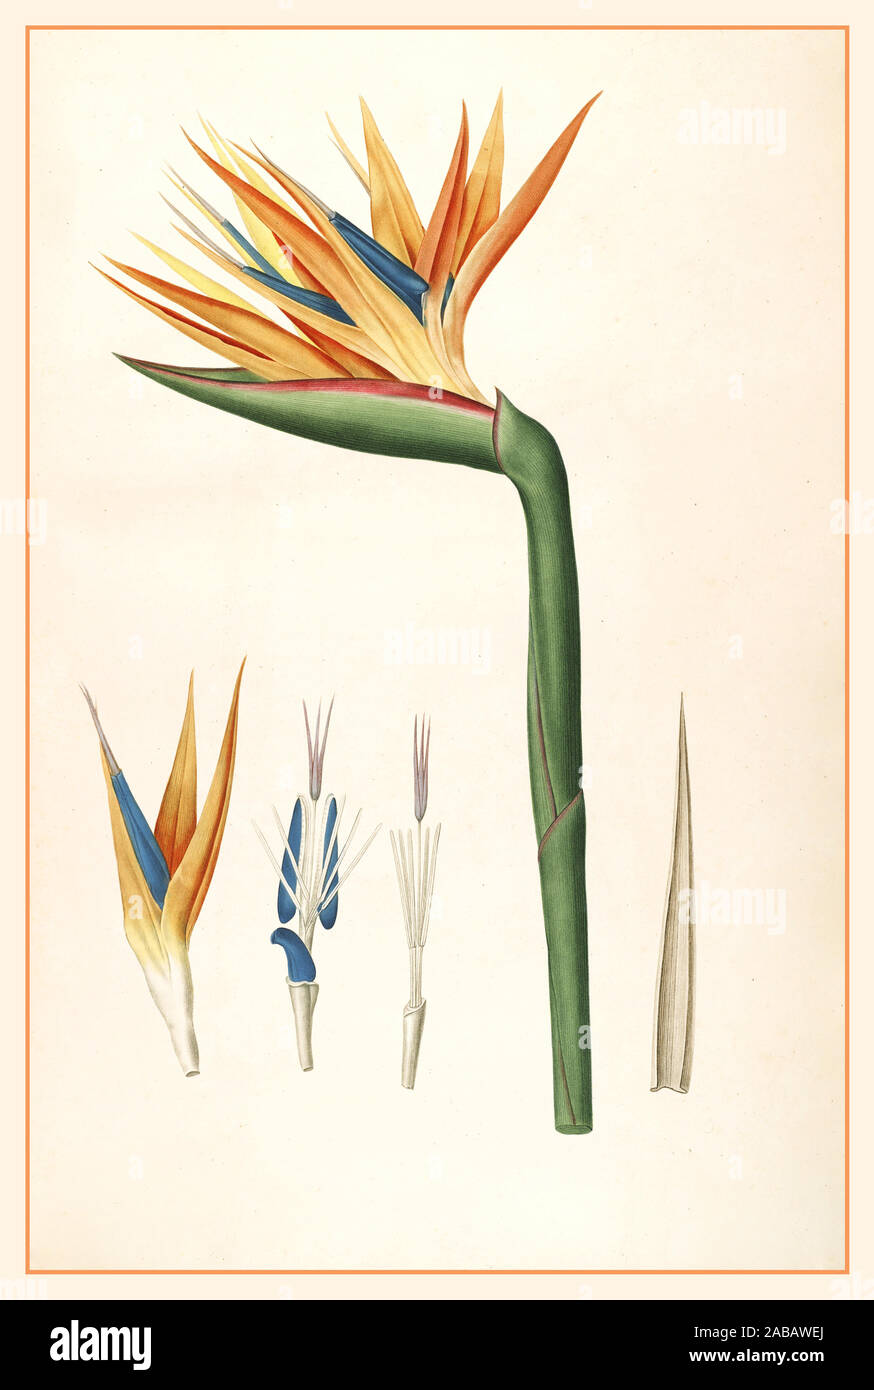 STRELITZIA 1800 Lithographie Vintage Oiseau du Paradis - Strelitzia reginae - circa 1812 -Botanique Fleur - oiseau , illustration couleur. 19ème siècle Illustration botanique Banque D'Images